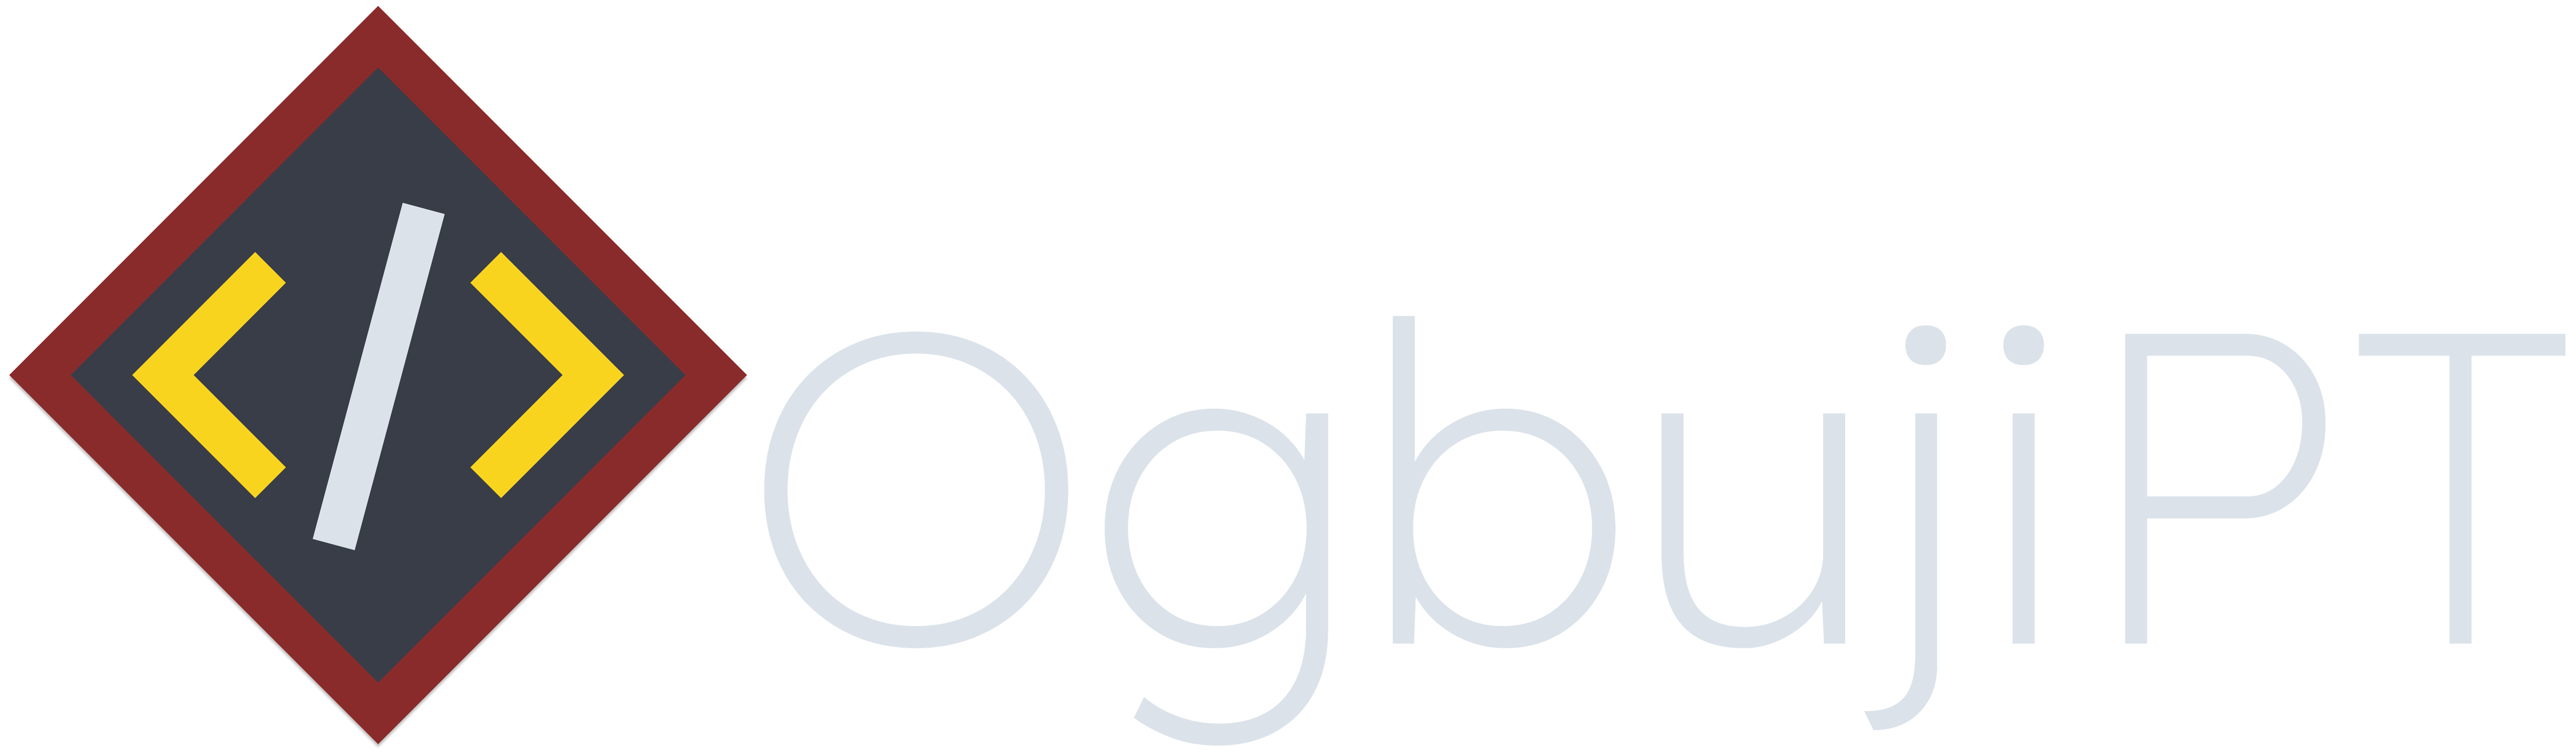 OgbujiPT text logo